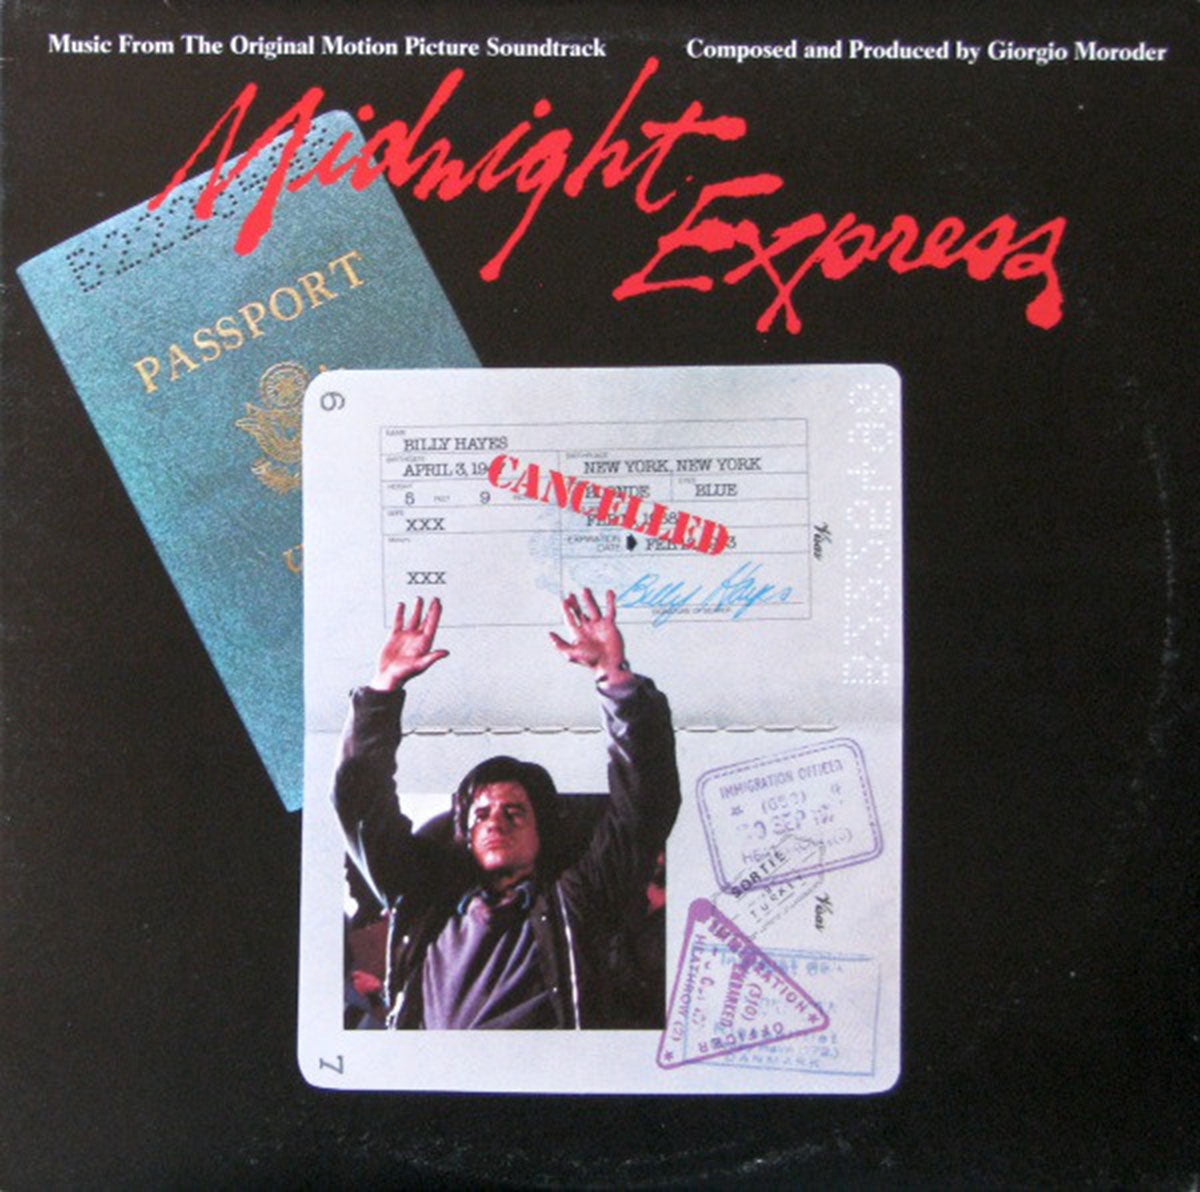 Midnight Express - Giorgio Moroder - Original Soundtrack - 1978